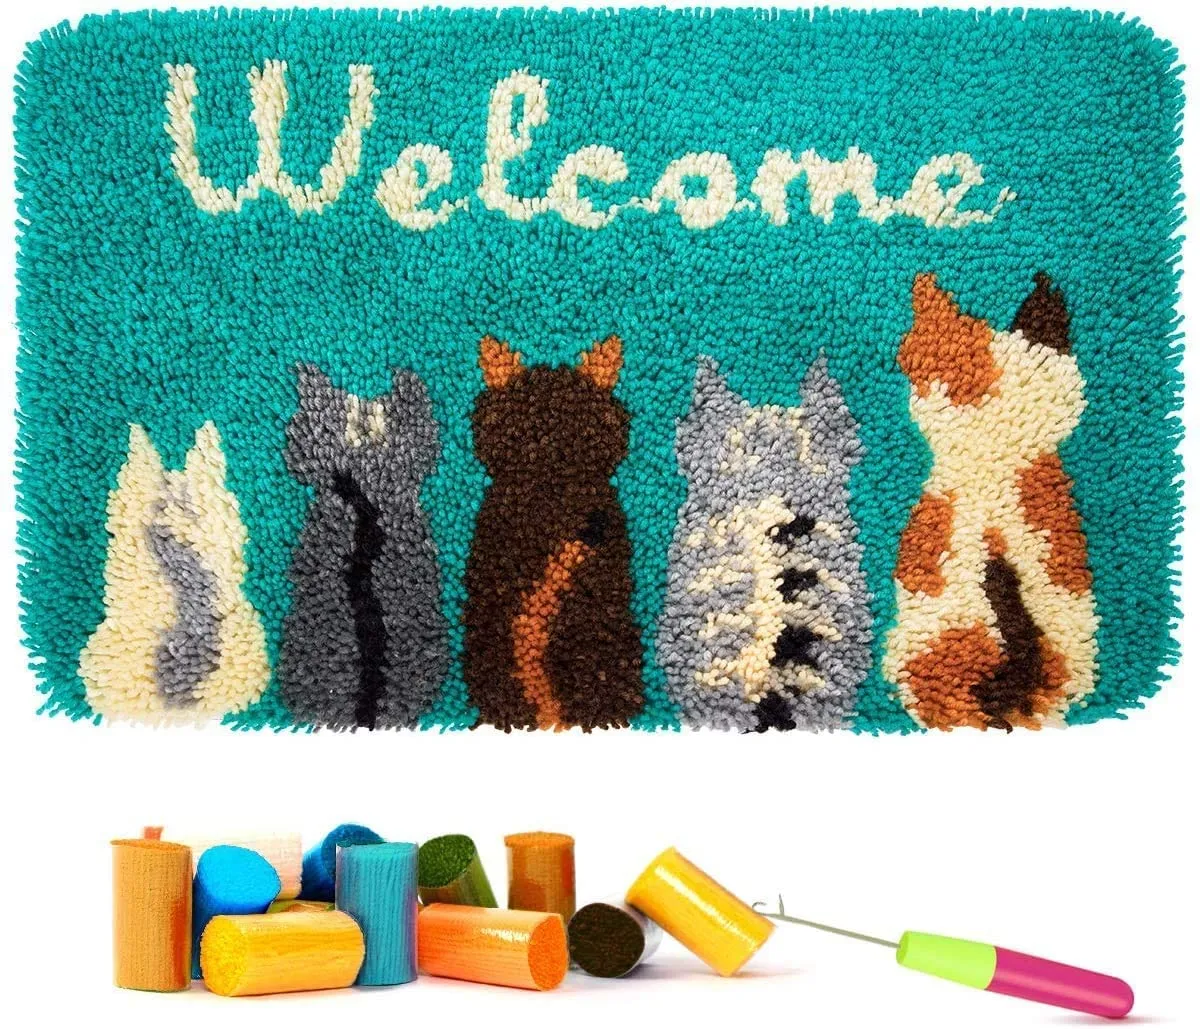 rug making kits - cats